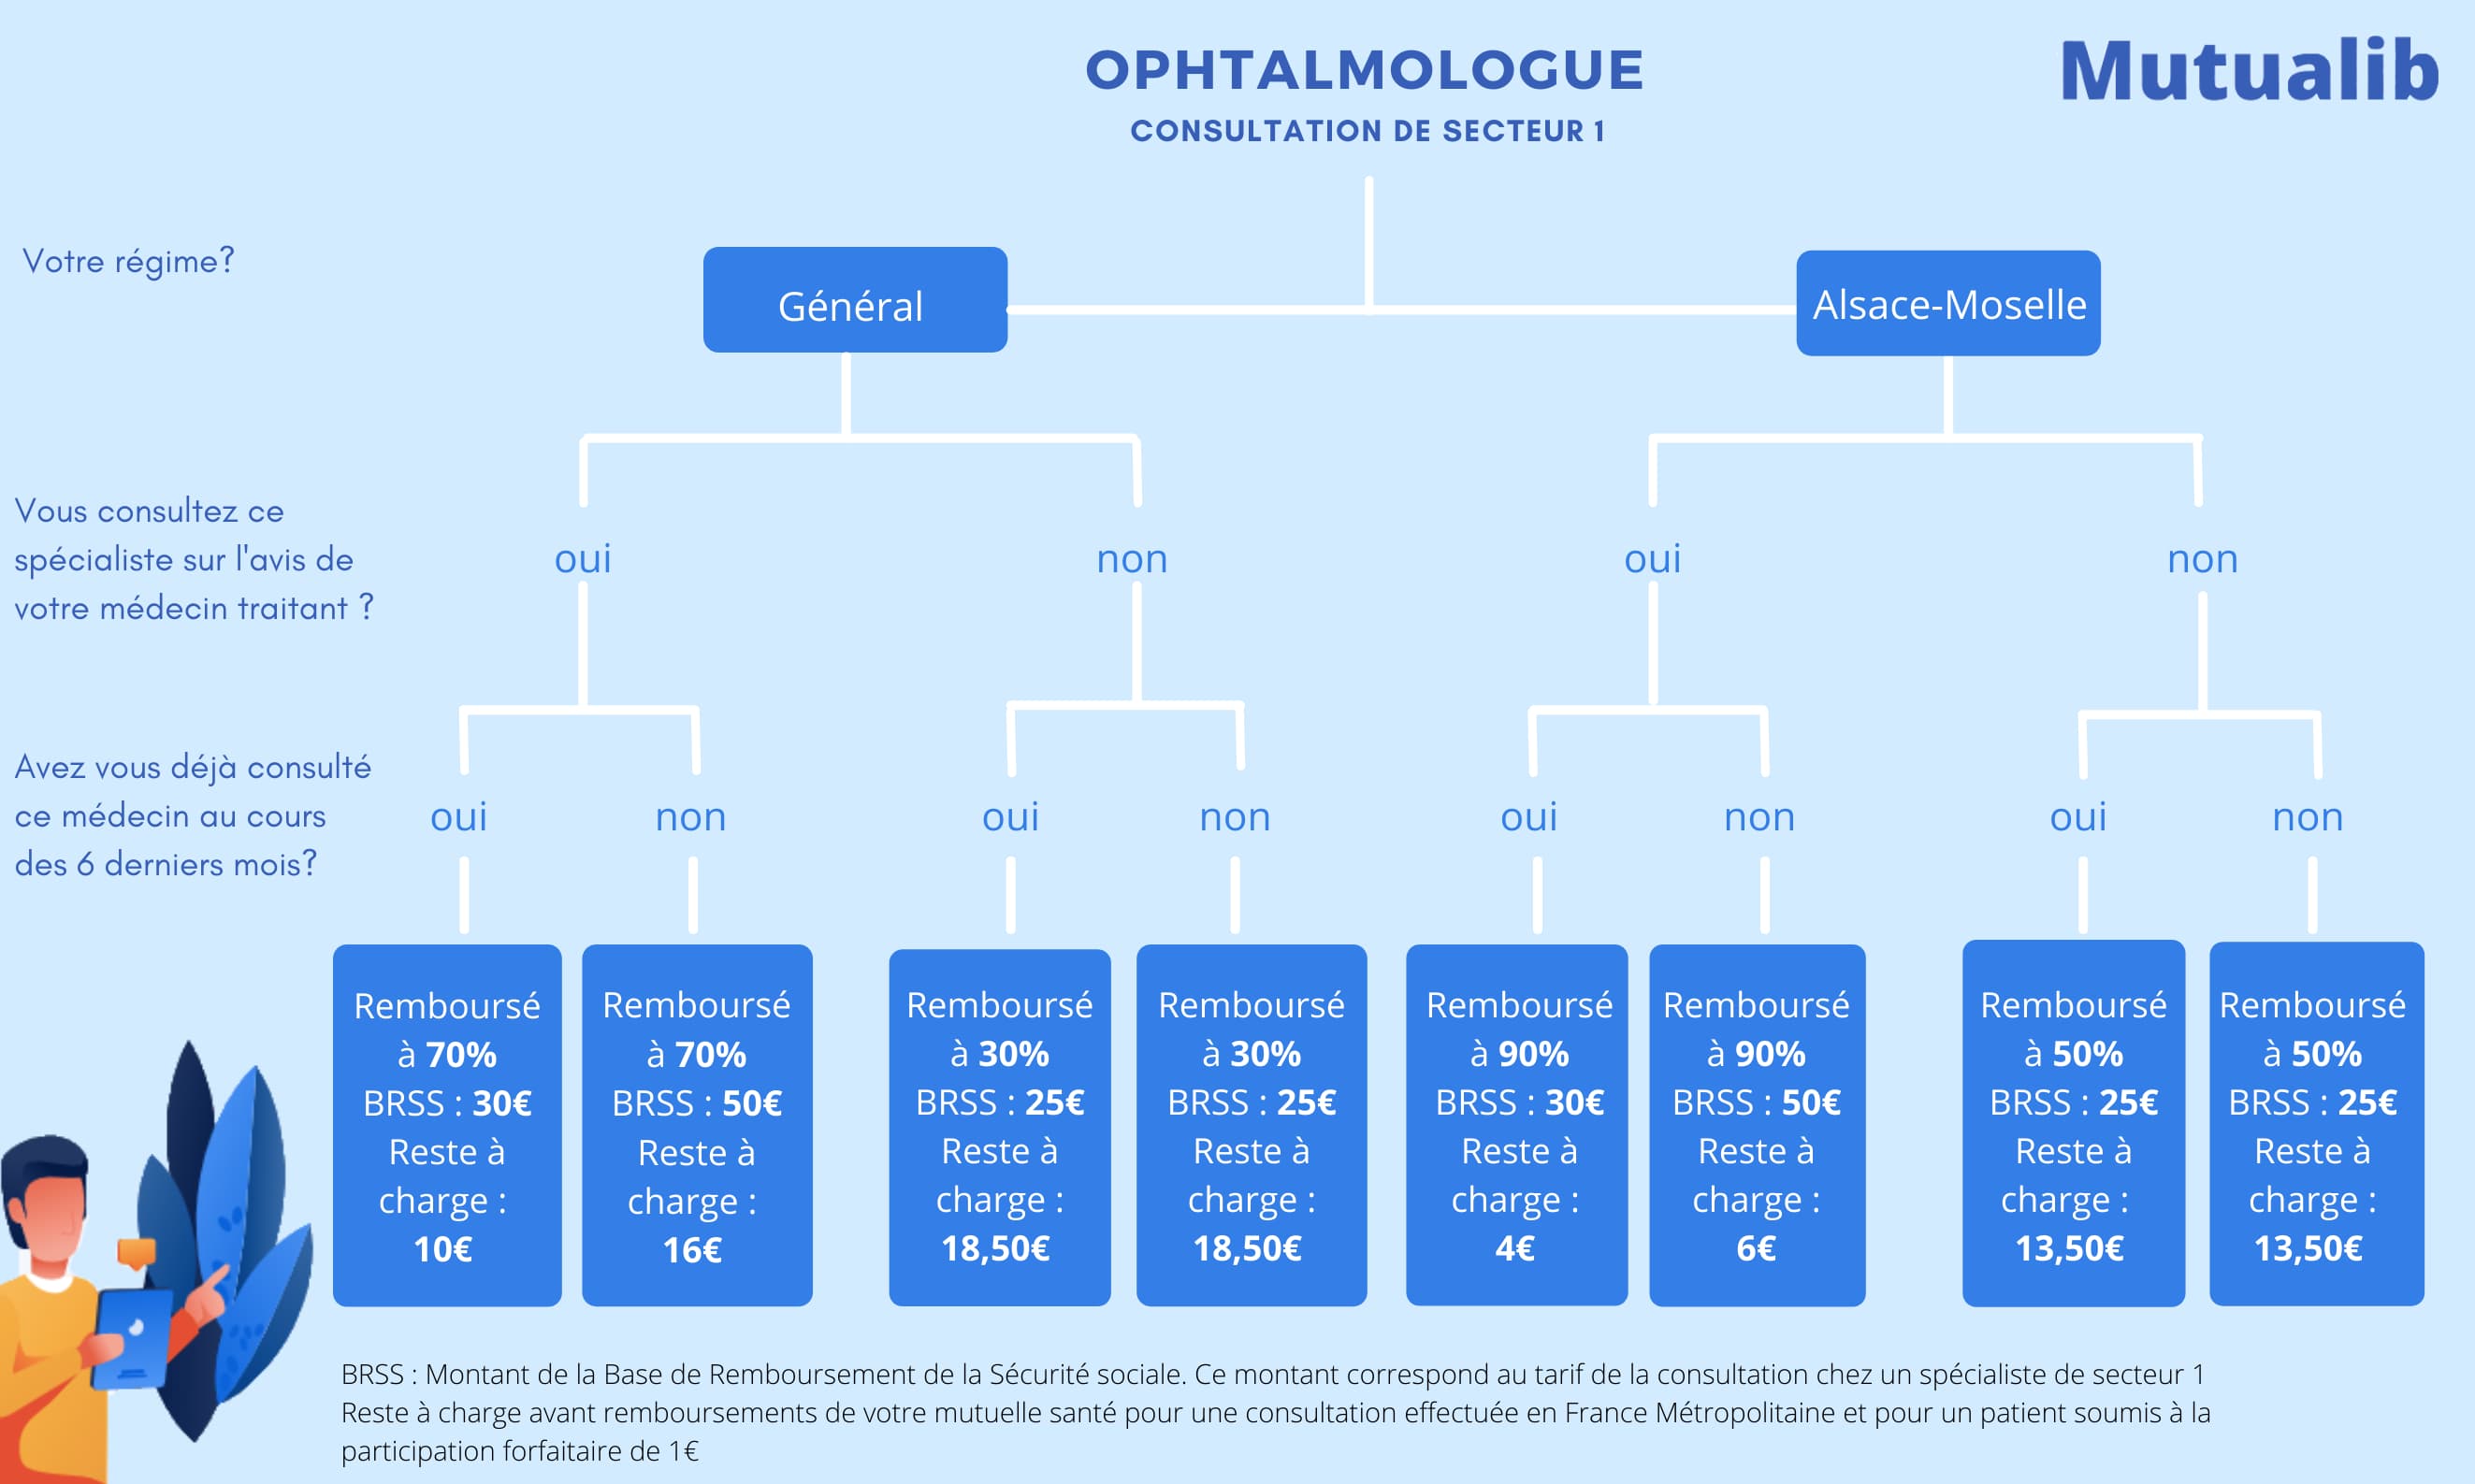 Remboursement consultation chez un ophtalmologue